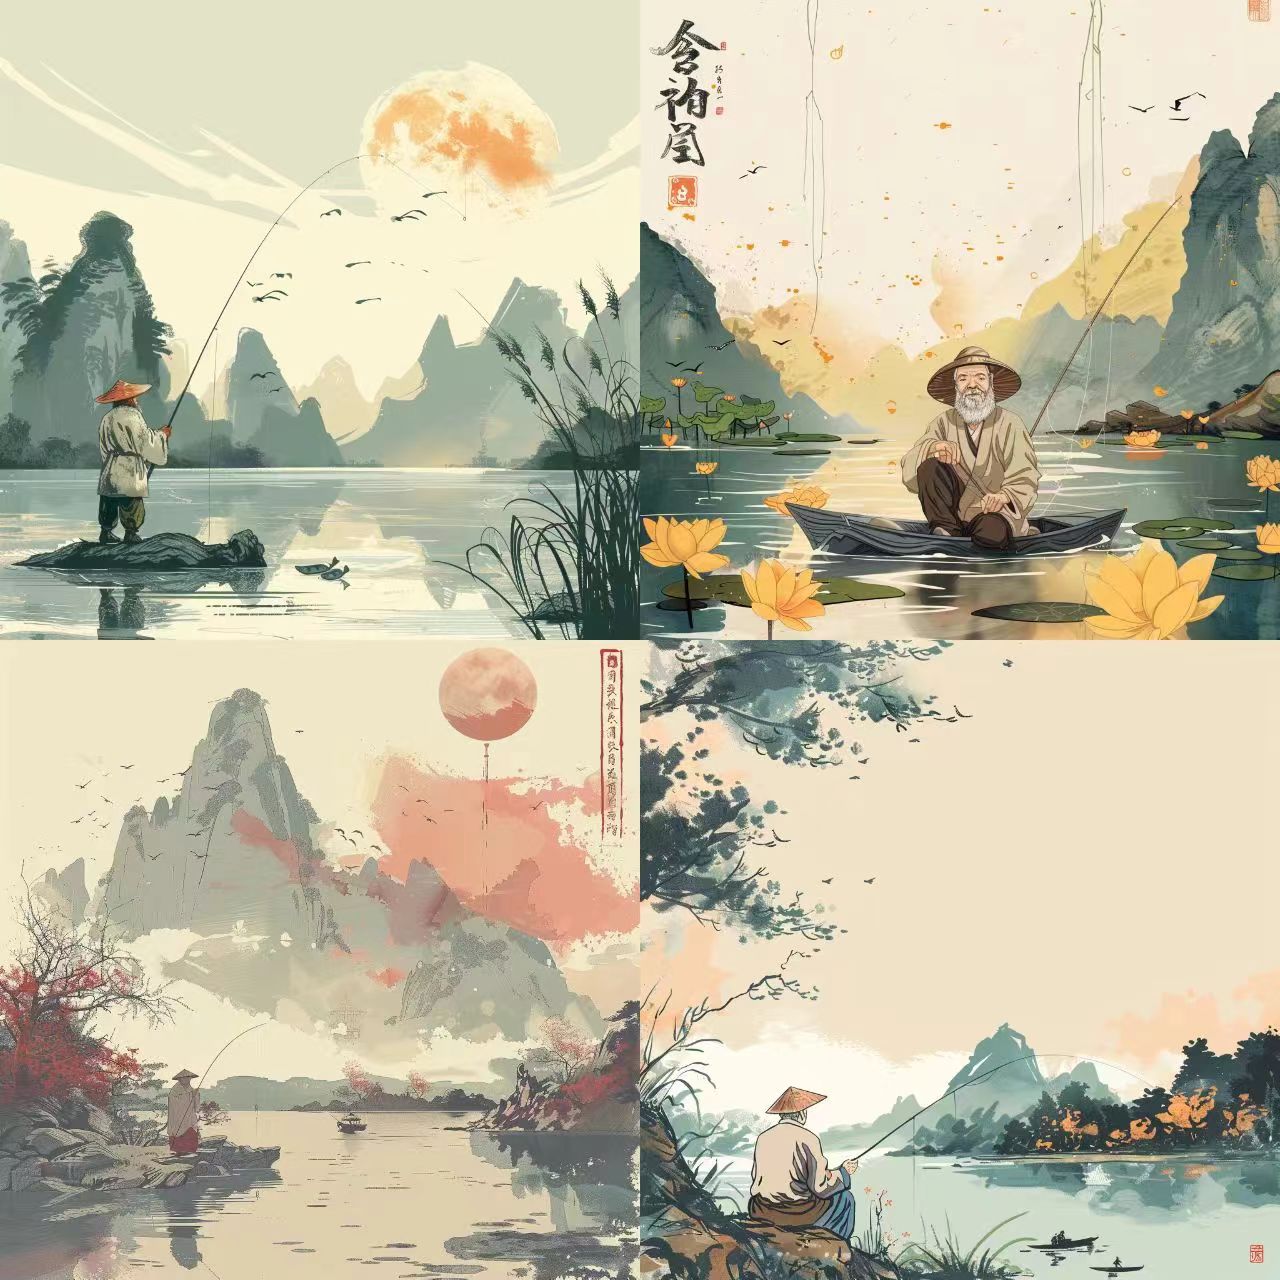 中国风插画设计代画卡通版人物情侣头像手绘国潮绘本原创商业古风